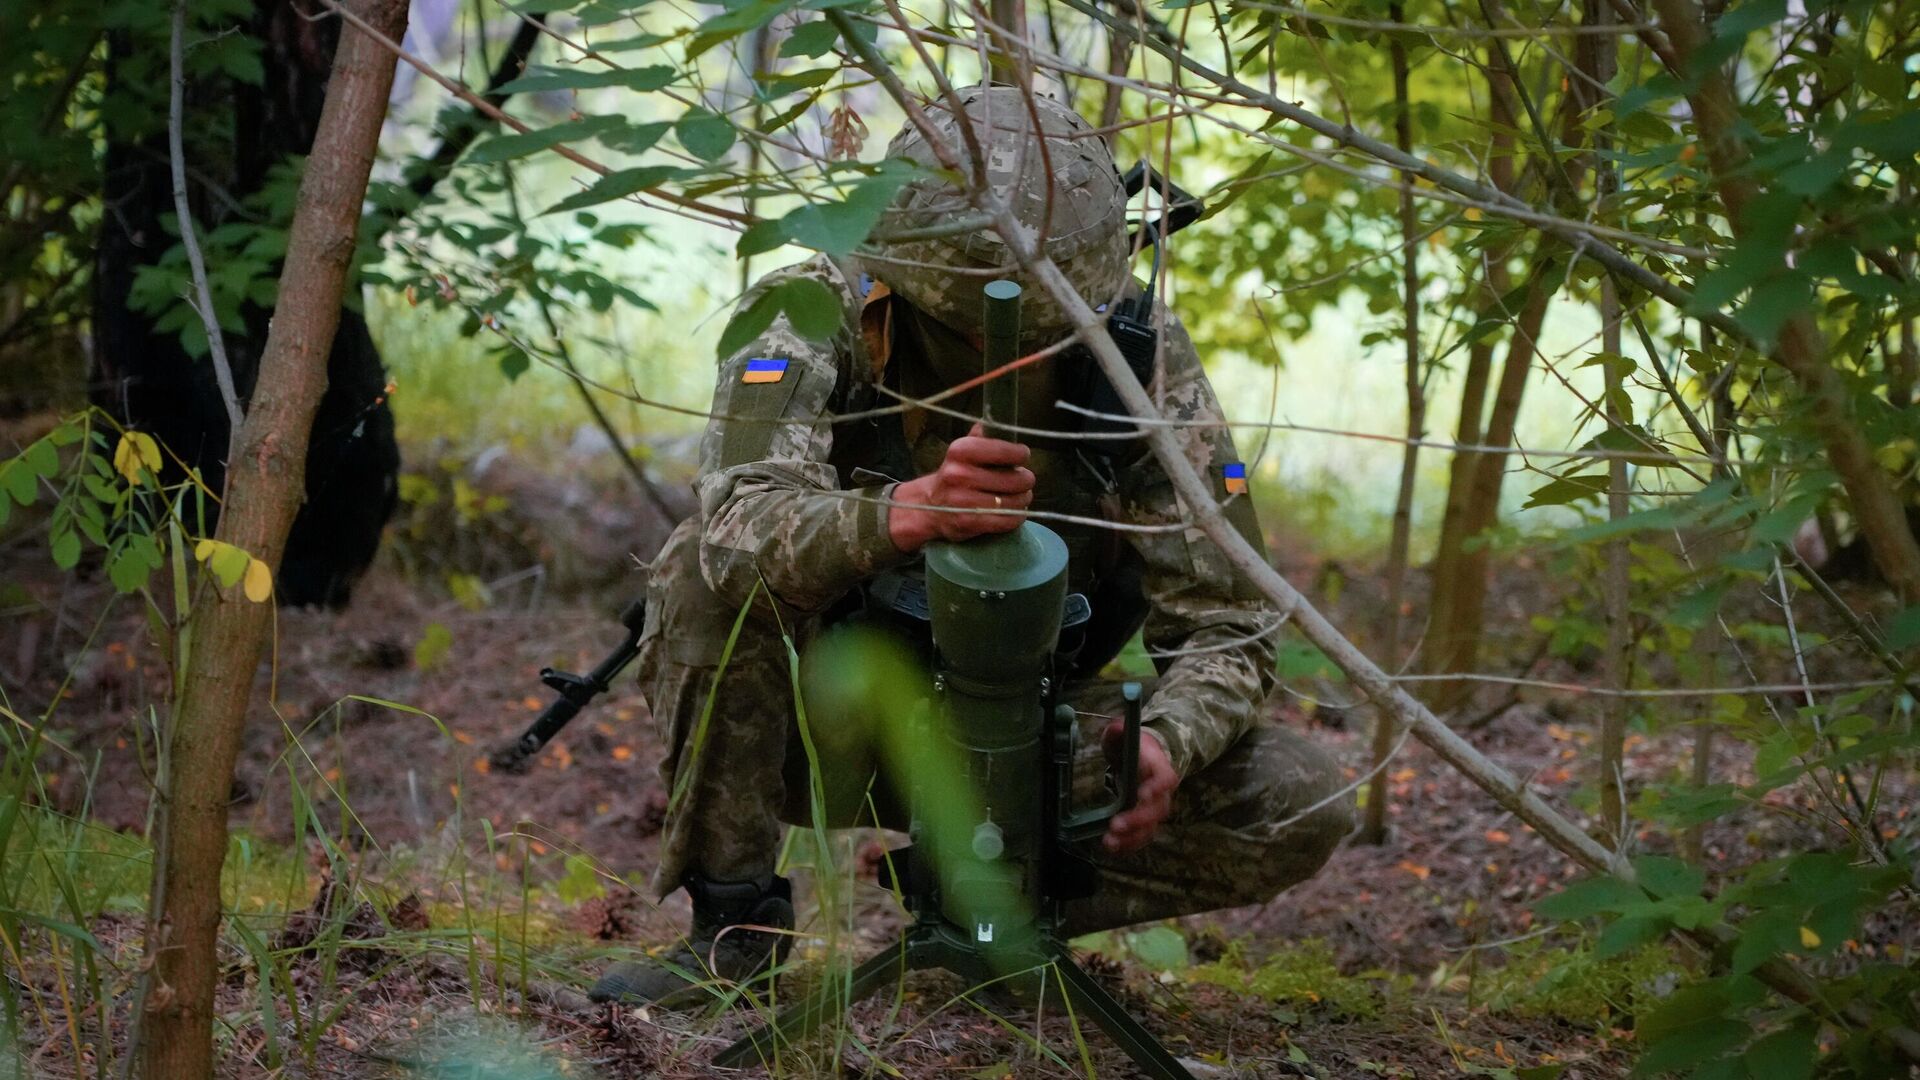 Солдат спецподразделения Украины устанавливает немецкую противотанковую мину направленного действия DM22 в Донецкой области - РИА Новости, 1920, 12.09.2022